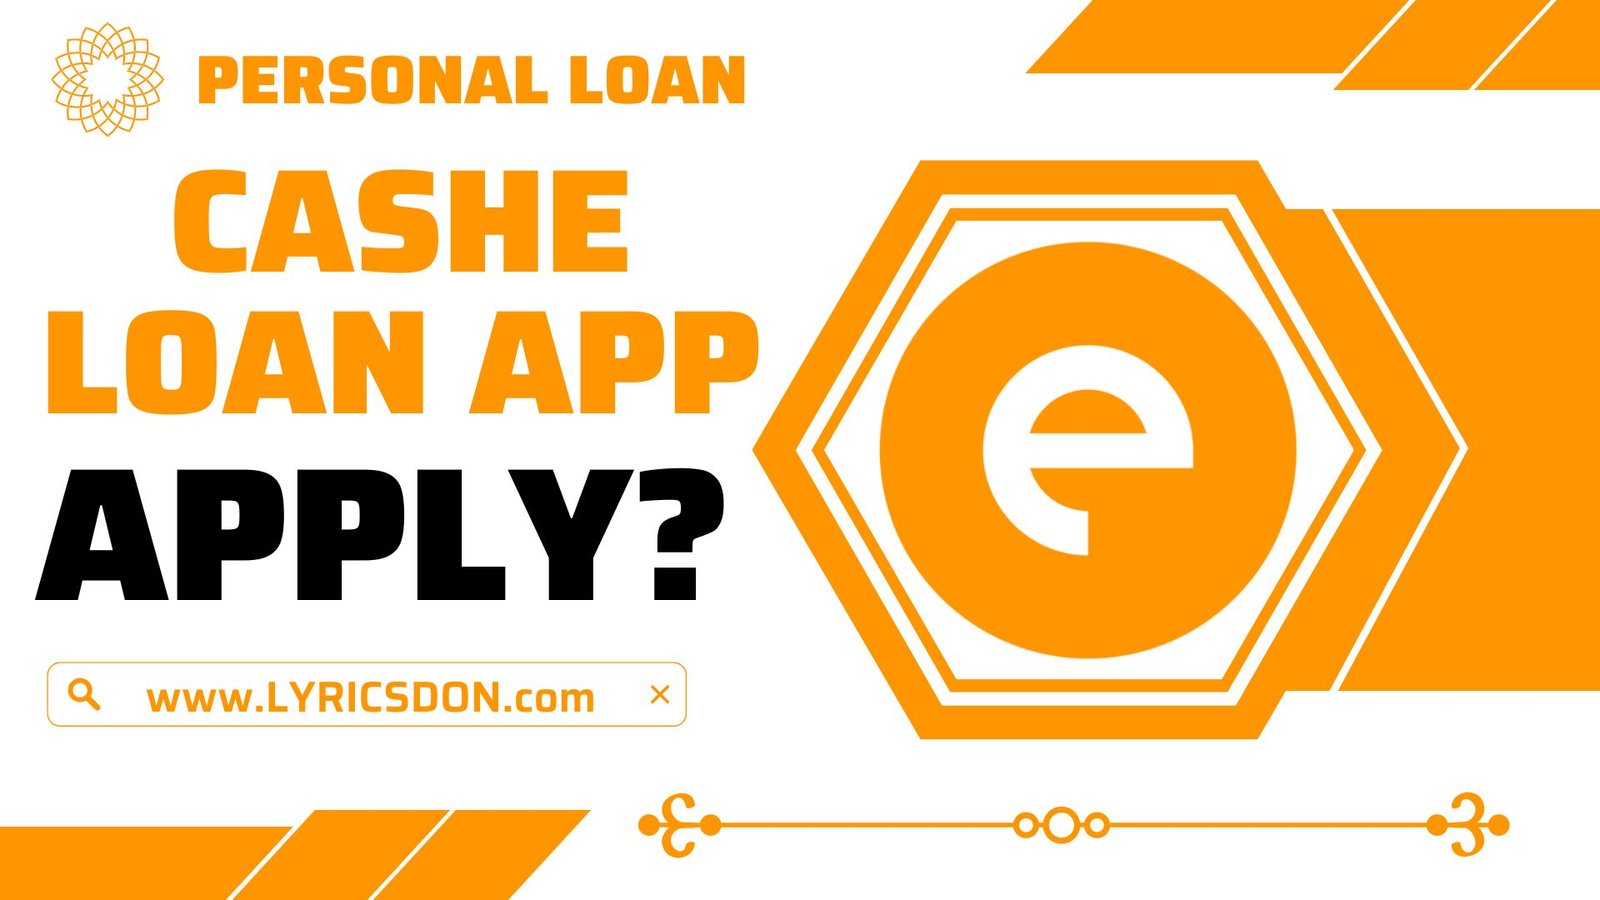 CASHe Loan App से लोन कैसे लें?